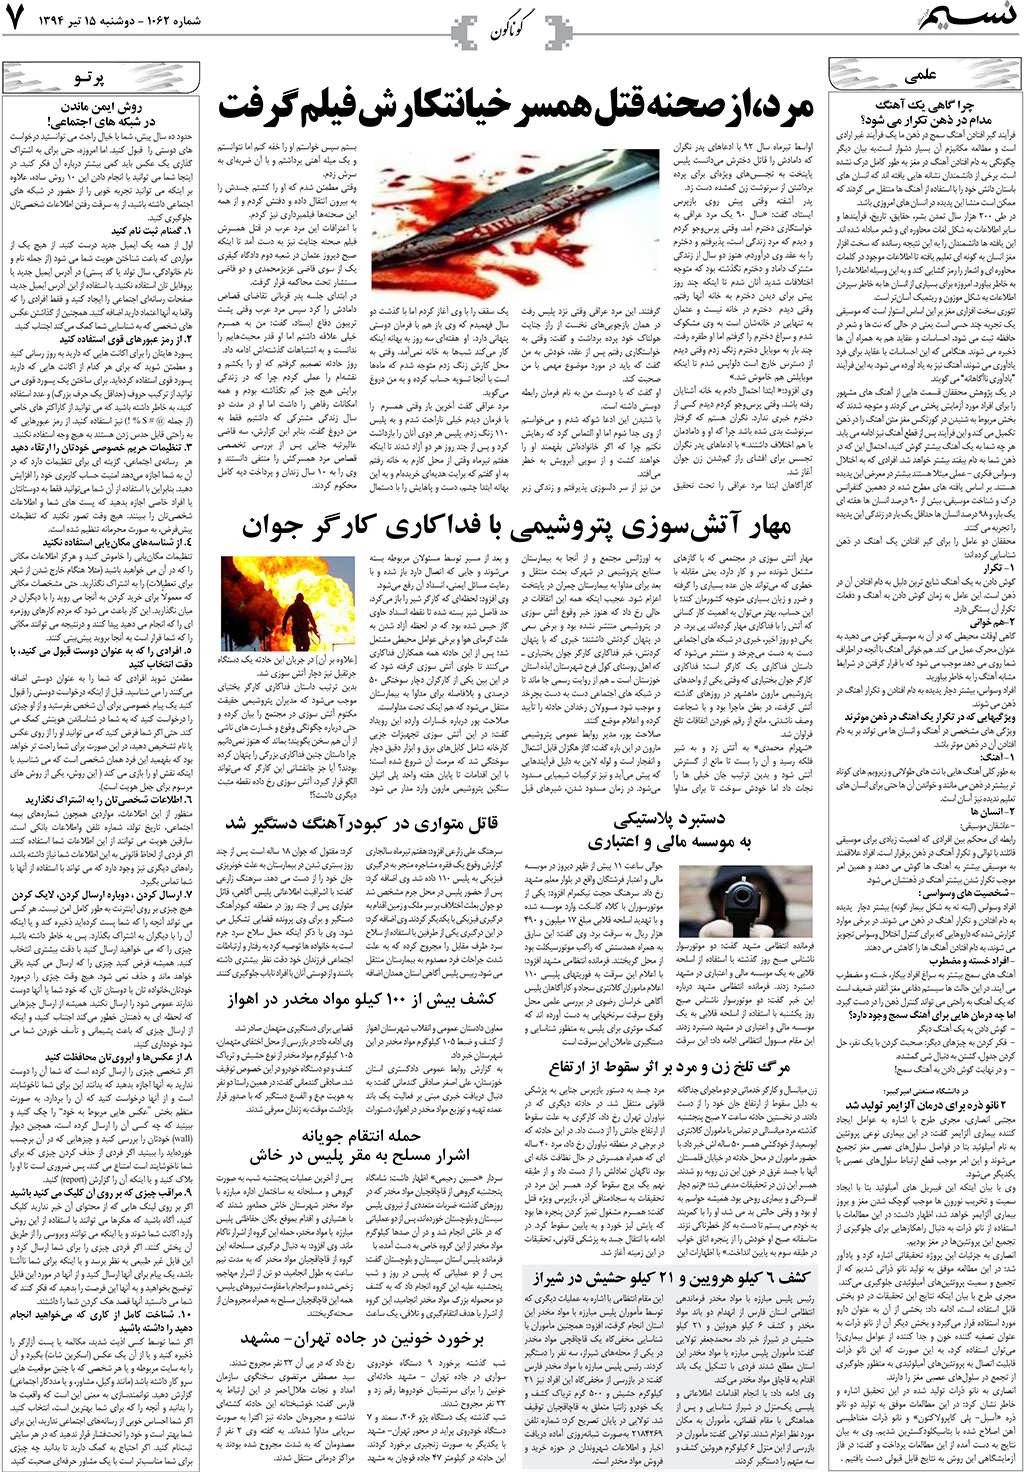 صفحه گوناگون روزنامه نسیم شماره 1062